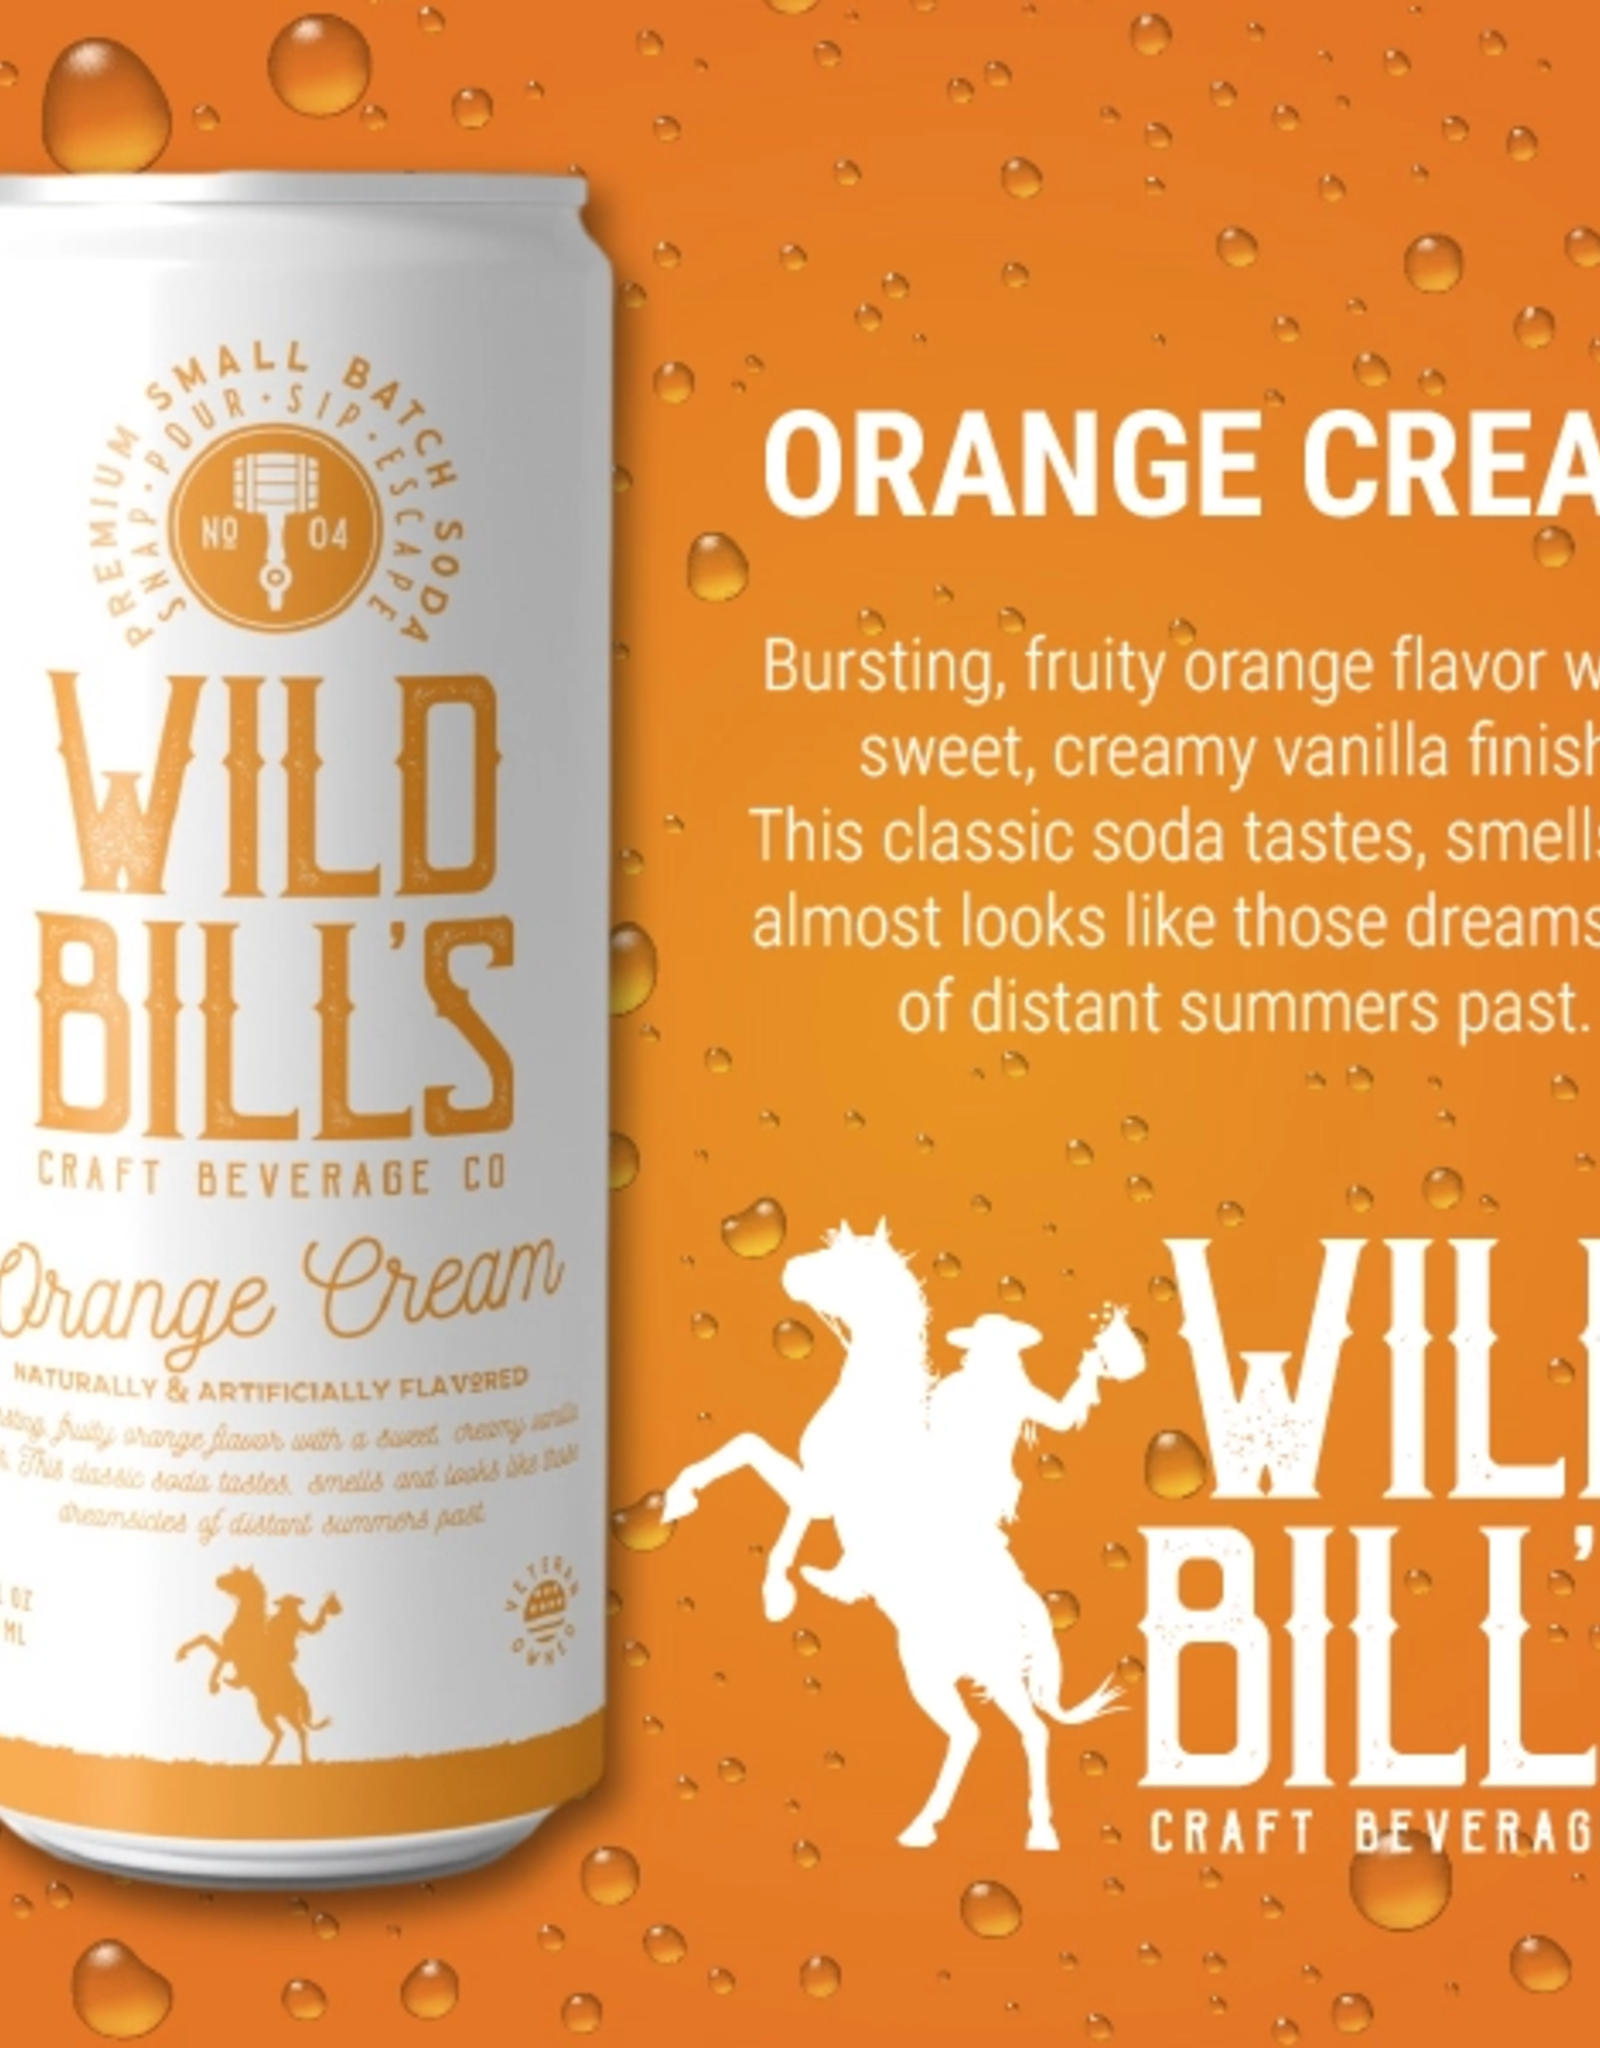 Wild Bill's Craft Beverage Co. Wild Bill's Orange Cream